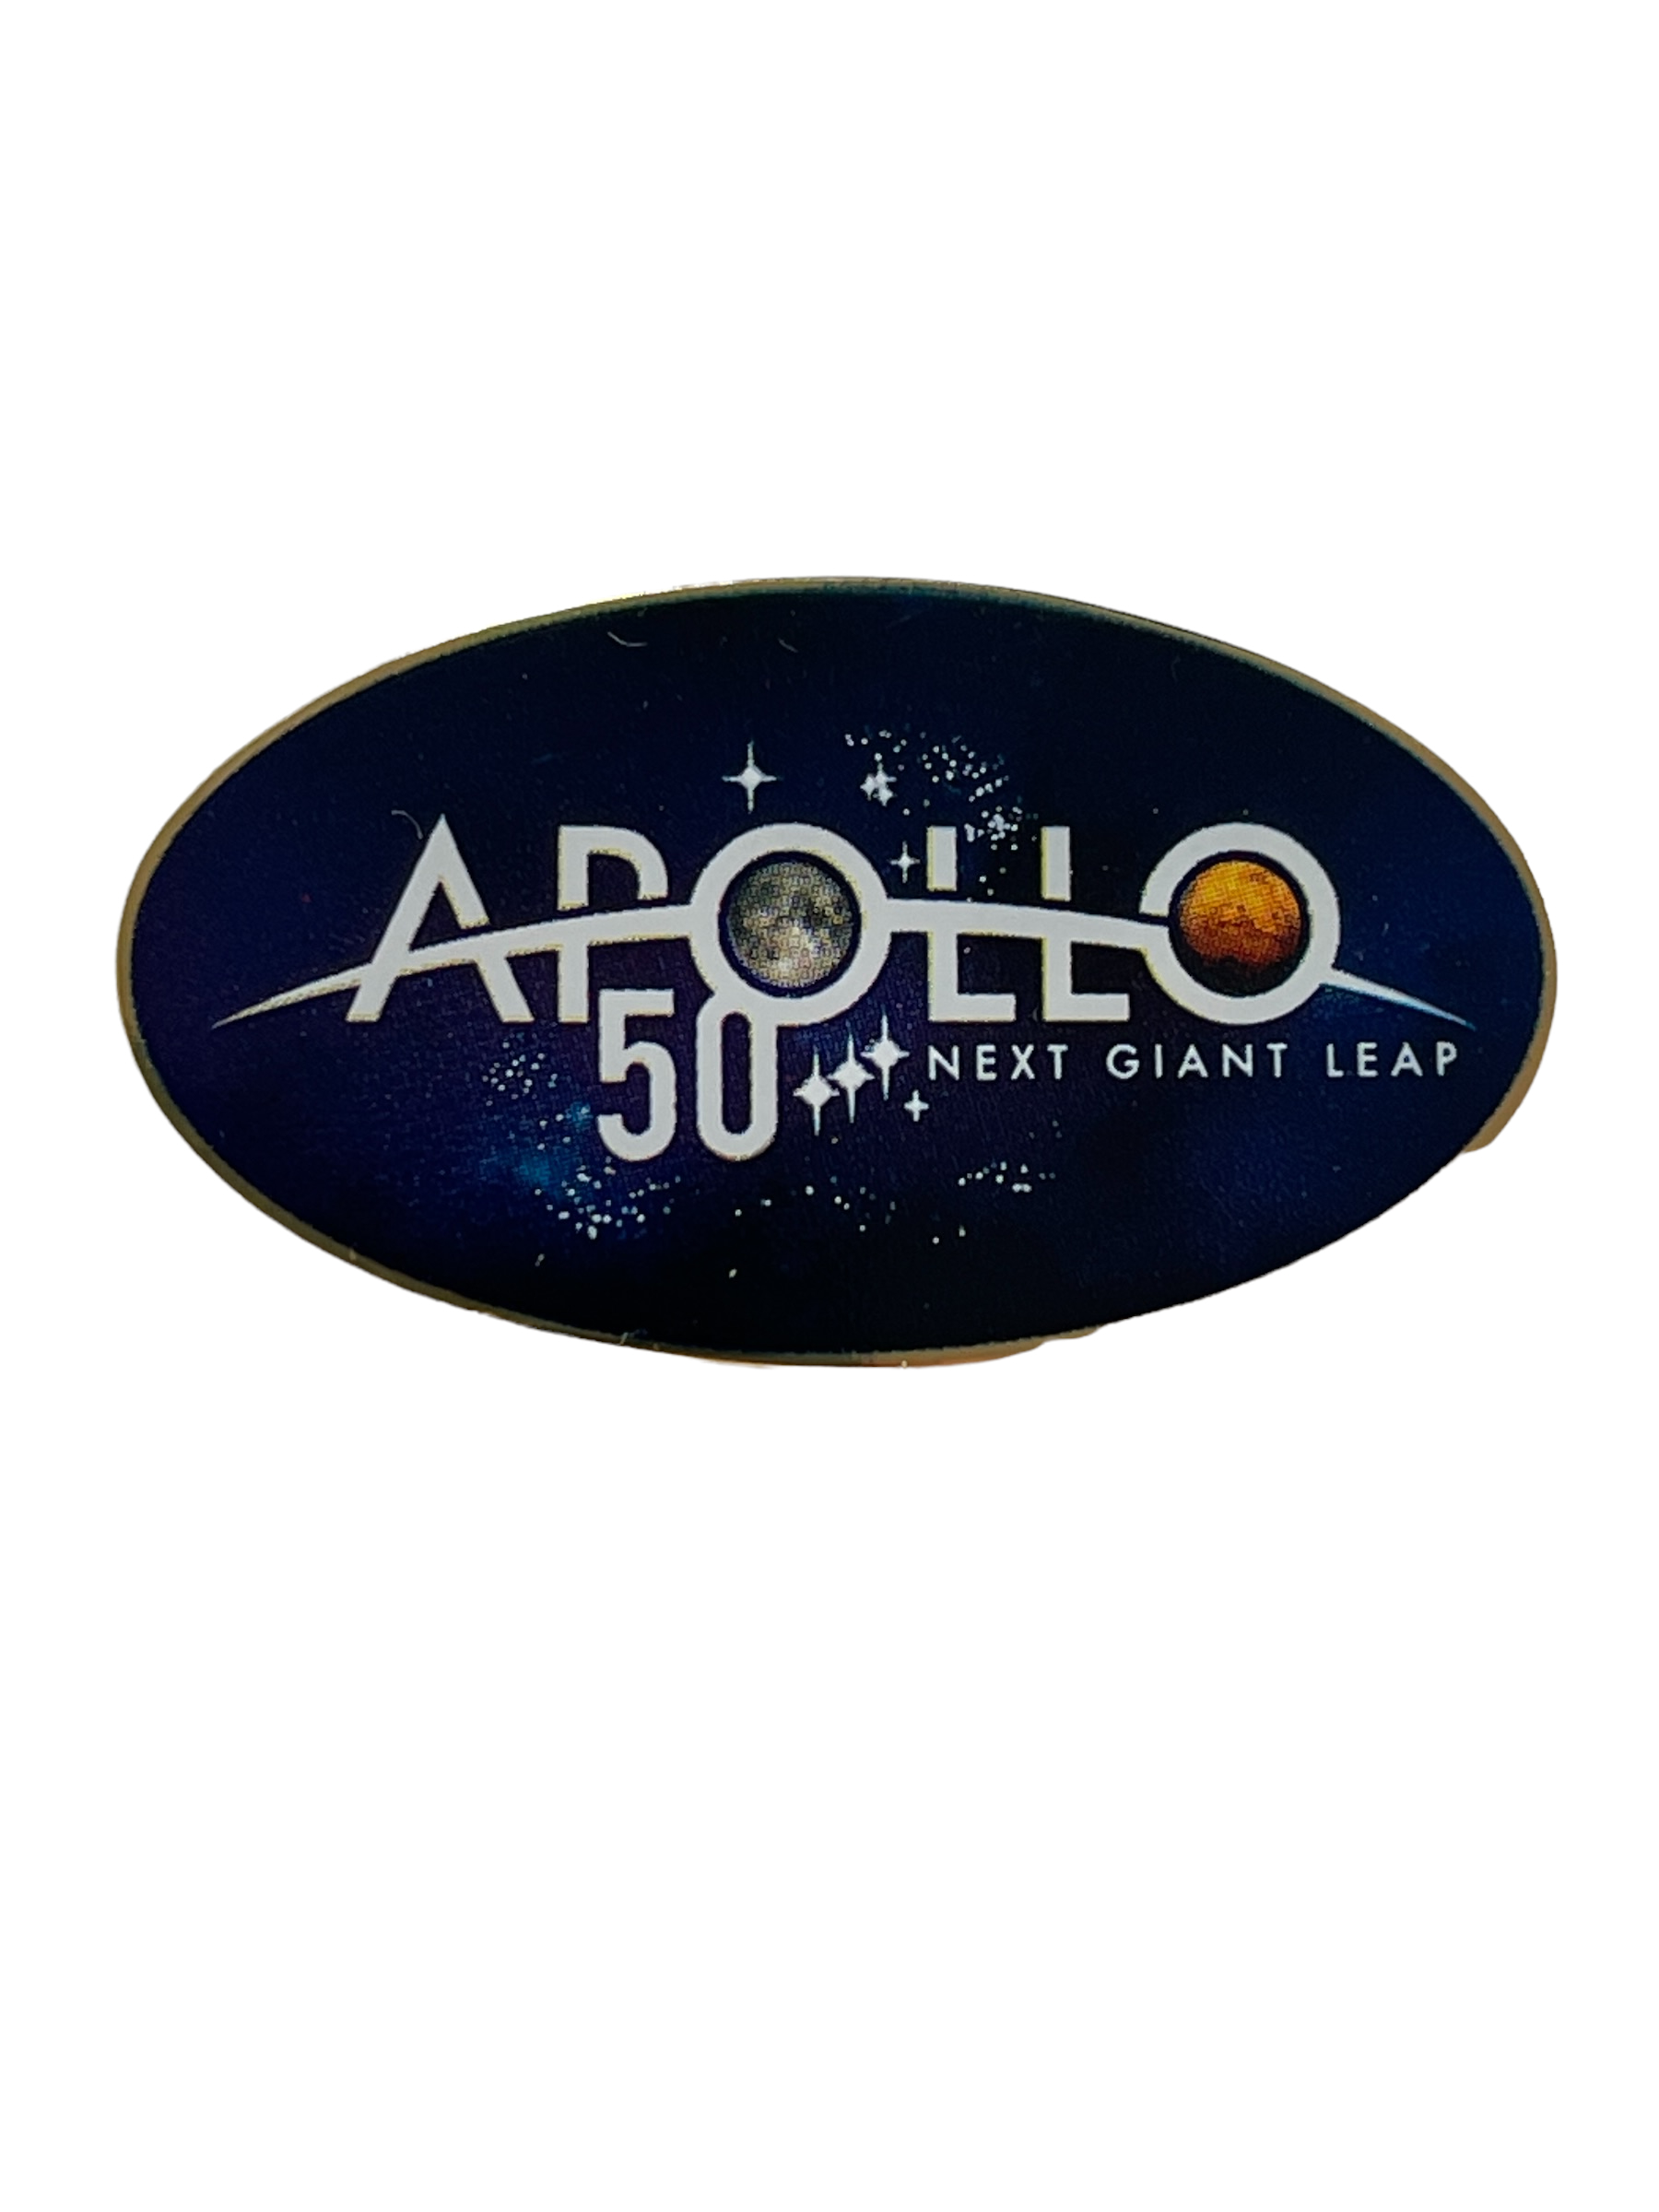 Apollo 50 Years Celebration Pin 'Next Giant Leap'